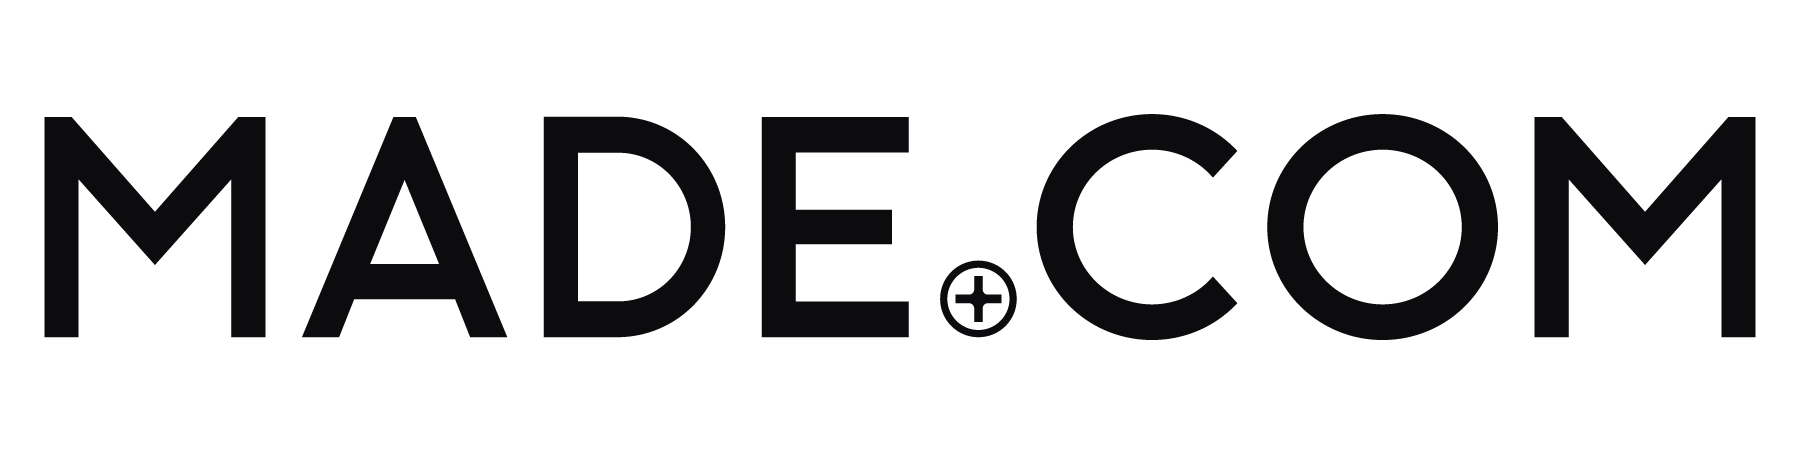 Made.com Logo - Made Logos